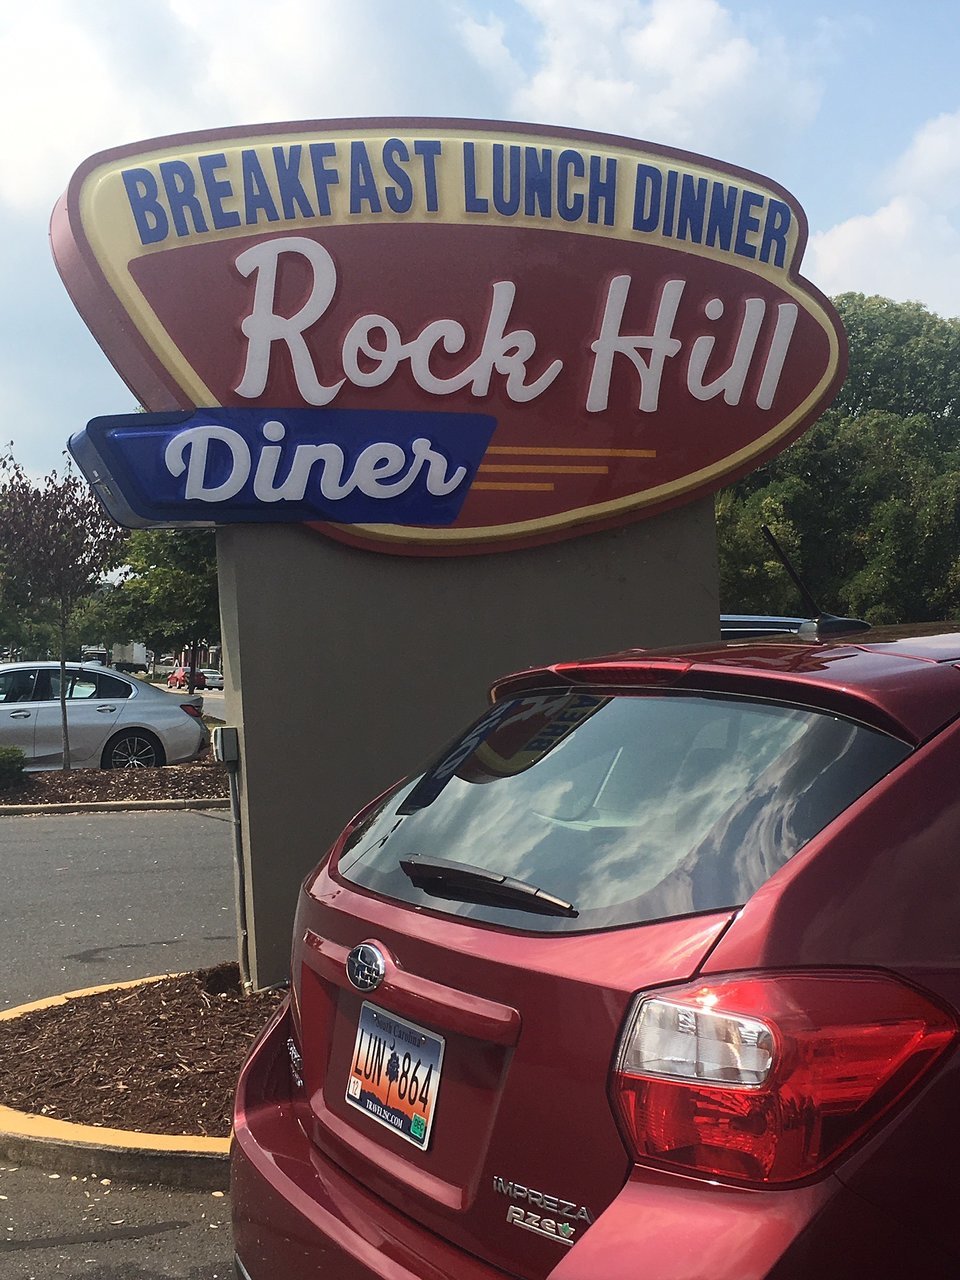 Rock Hill Diner